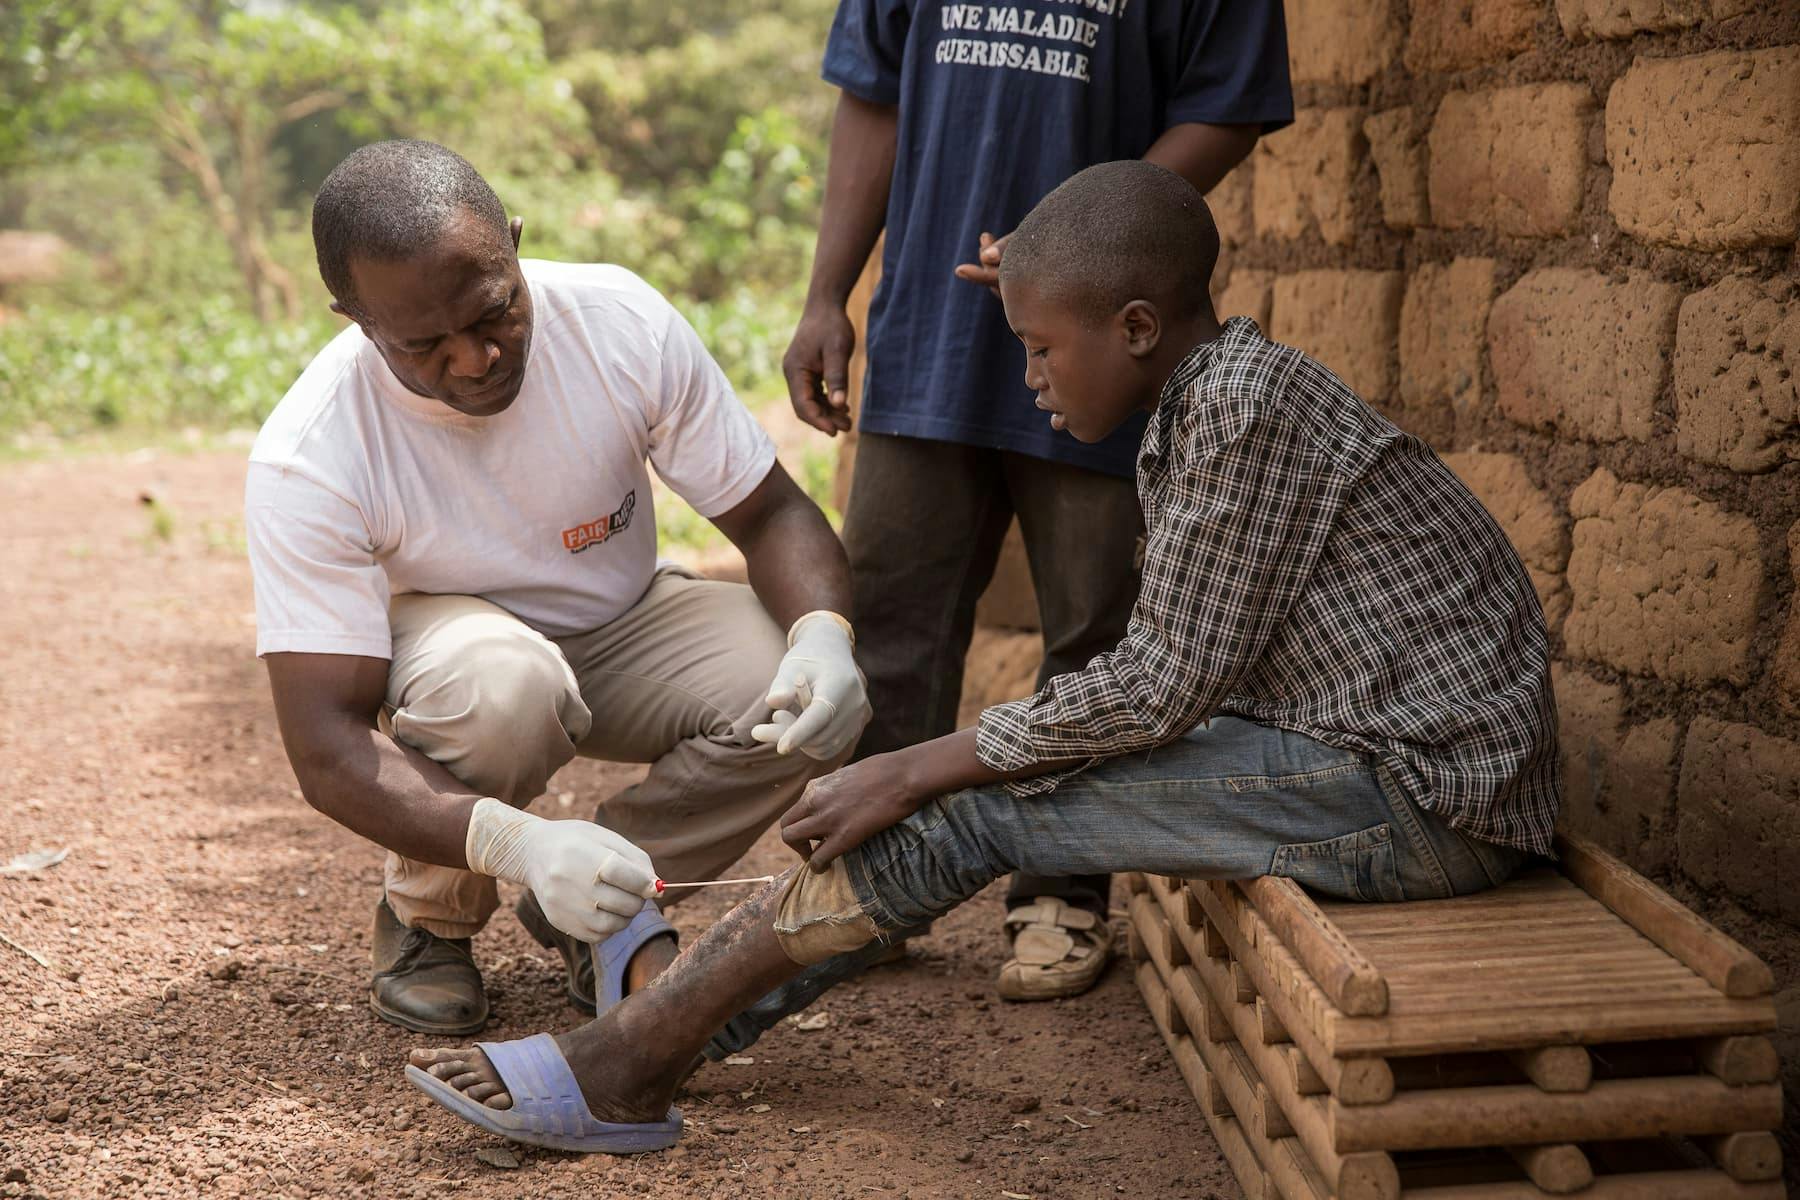 Un collaborateur de FAIRMED au Cameroun traite une blessure d'ulcère de Buruli à la jambe d'un adolescent. L'adolescent est assis devant une hutte dans un village reculé.